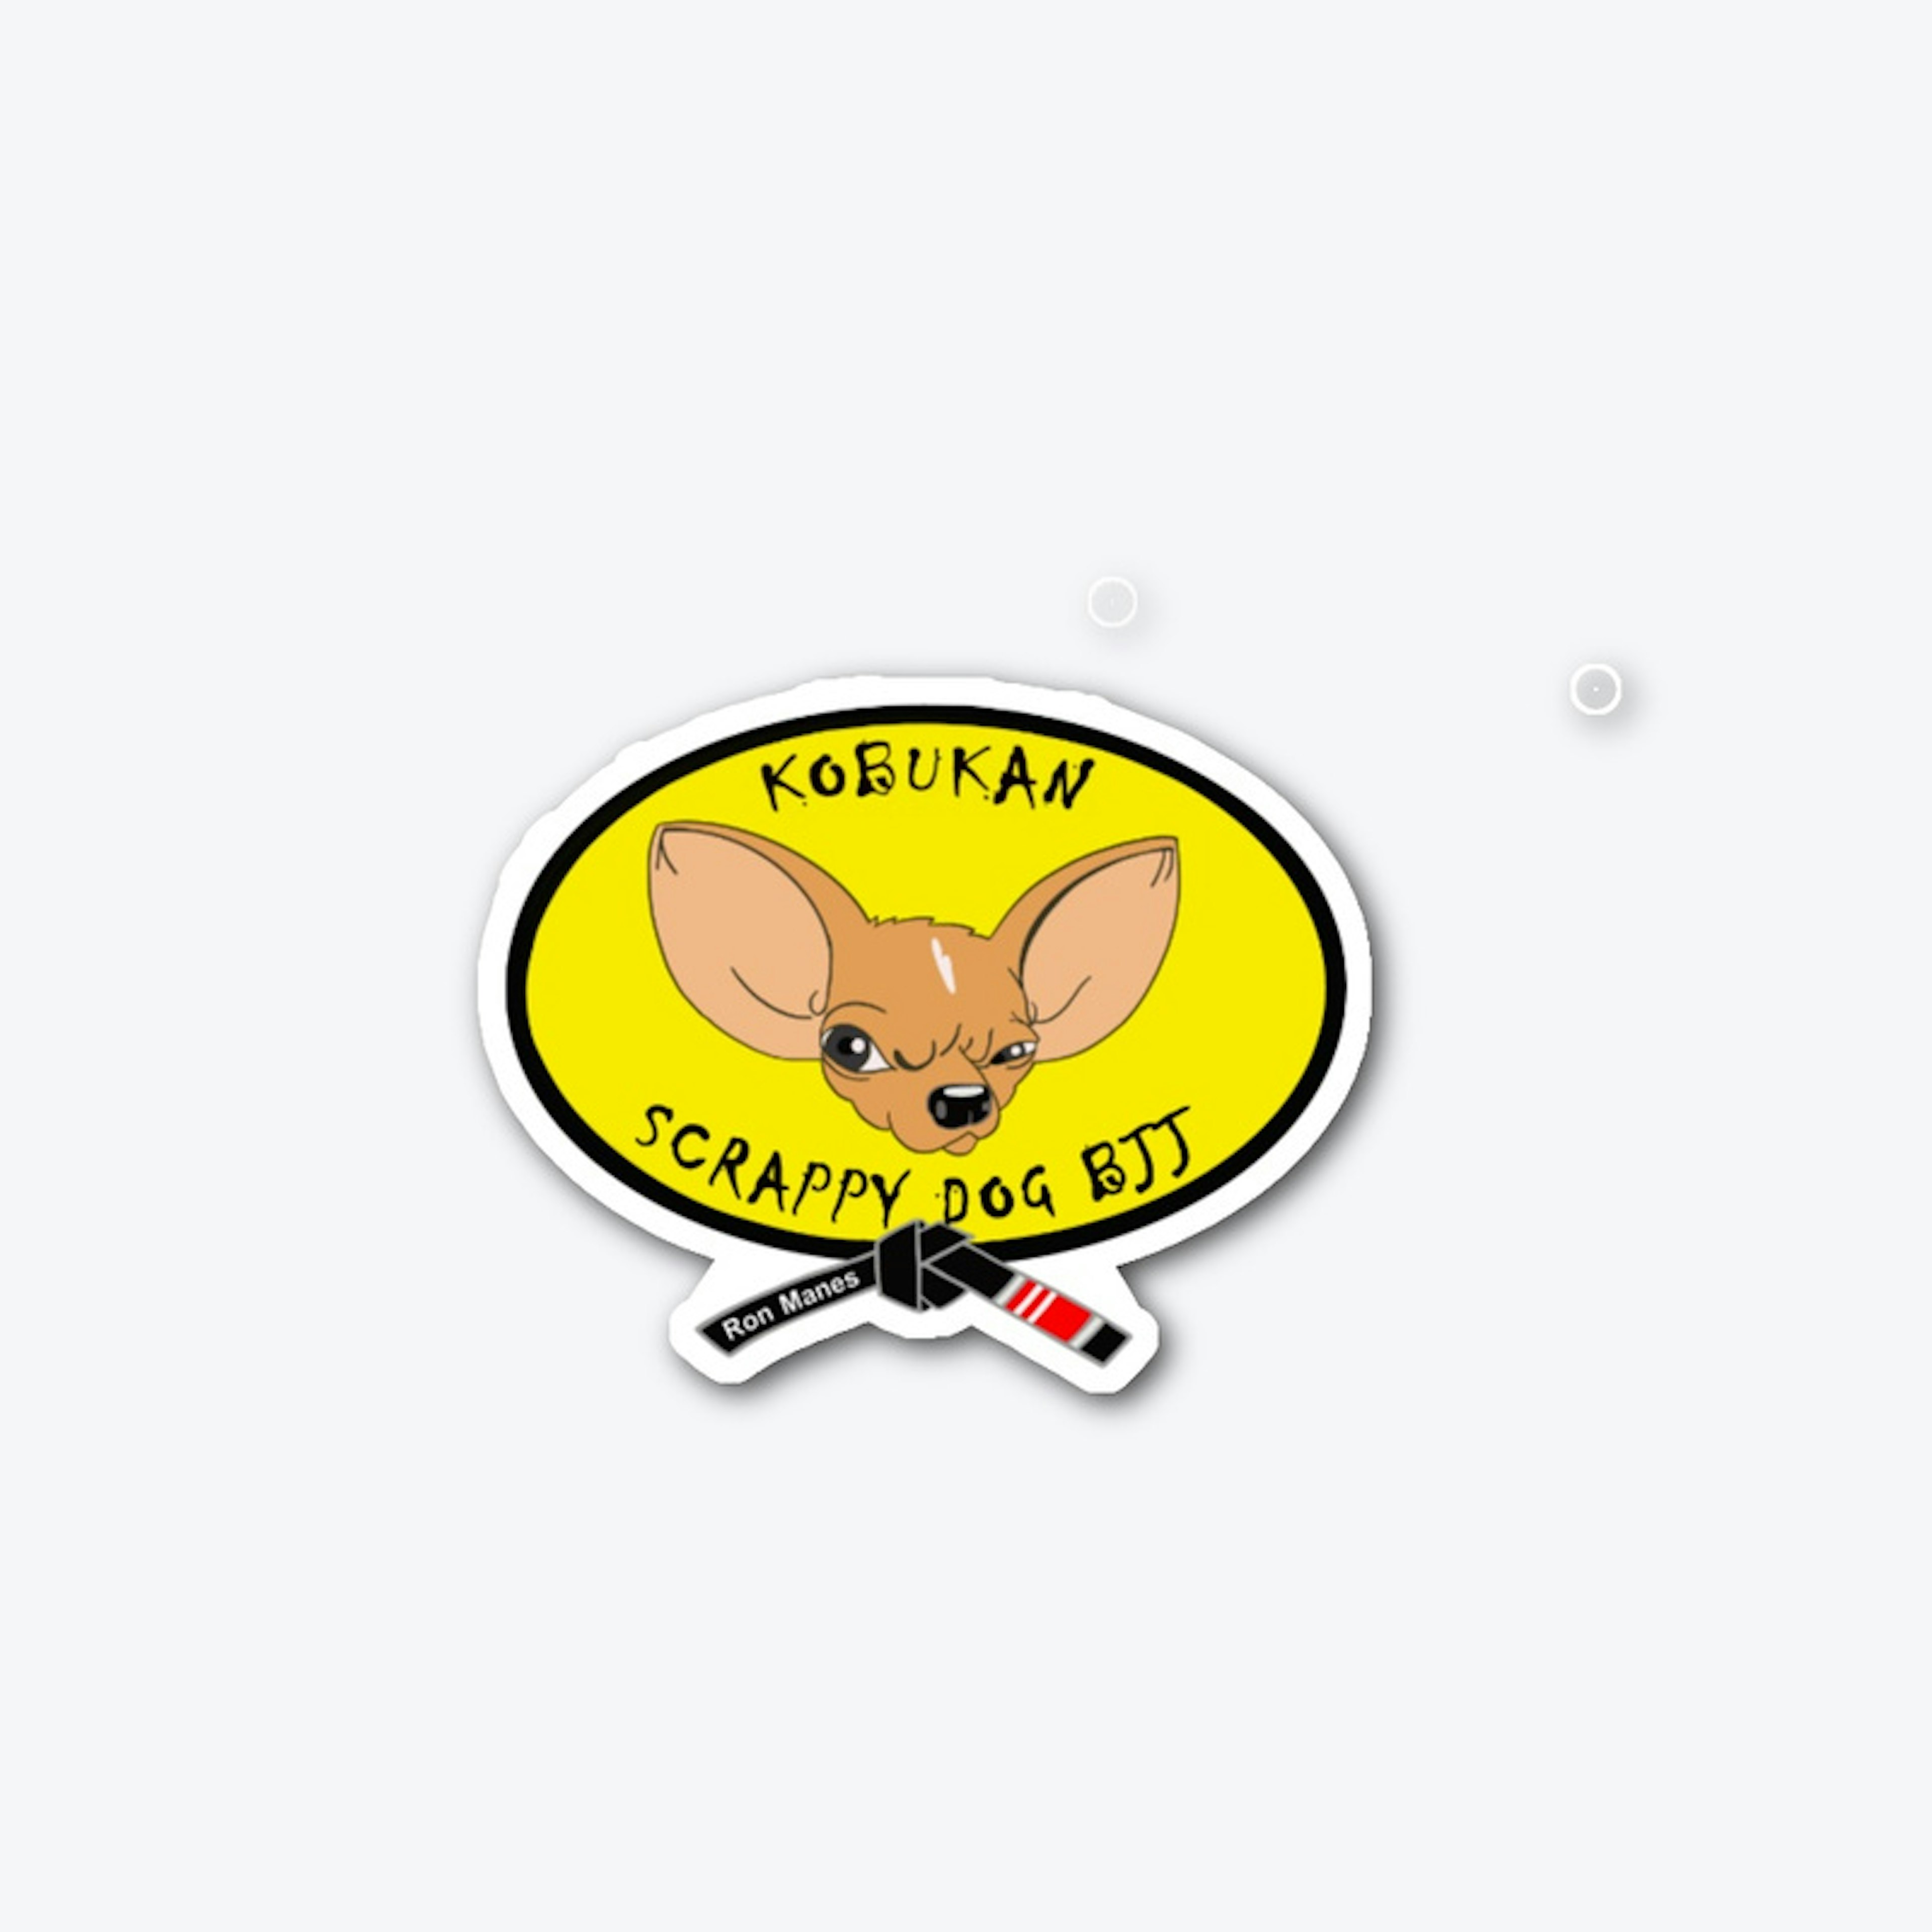 Scrappy Dog logo decal